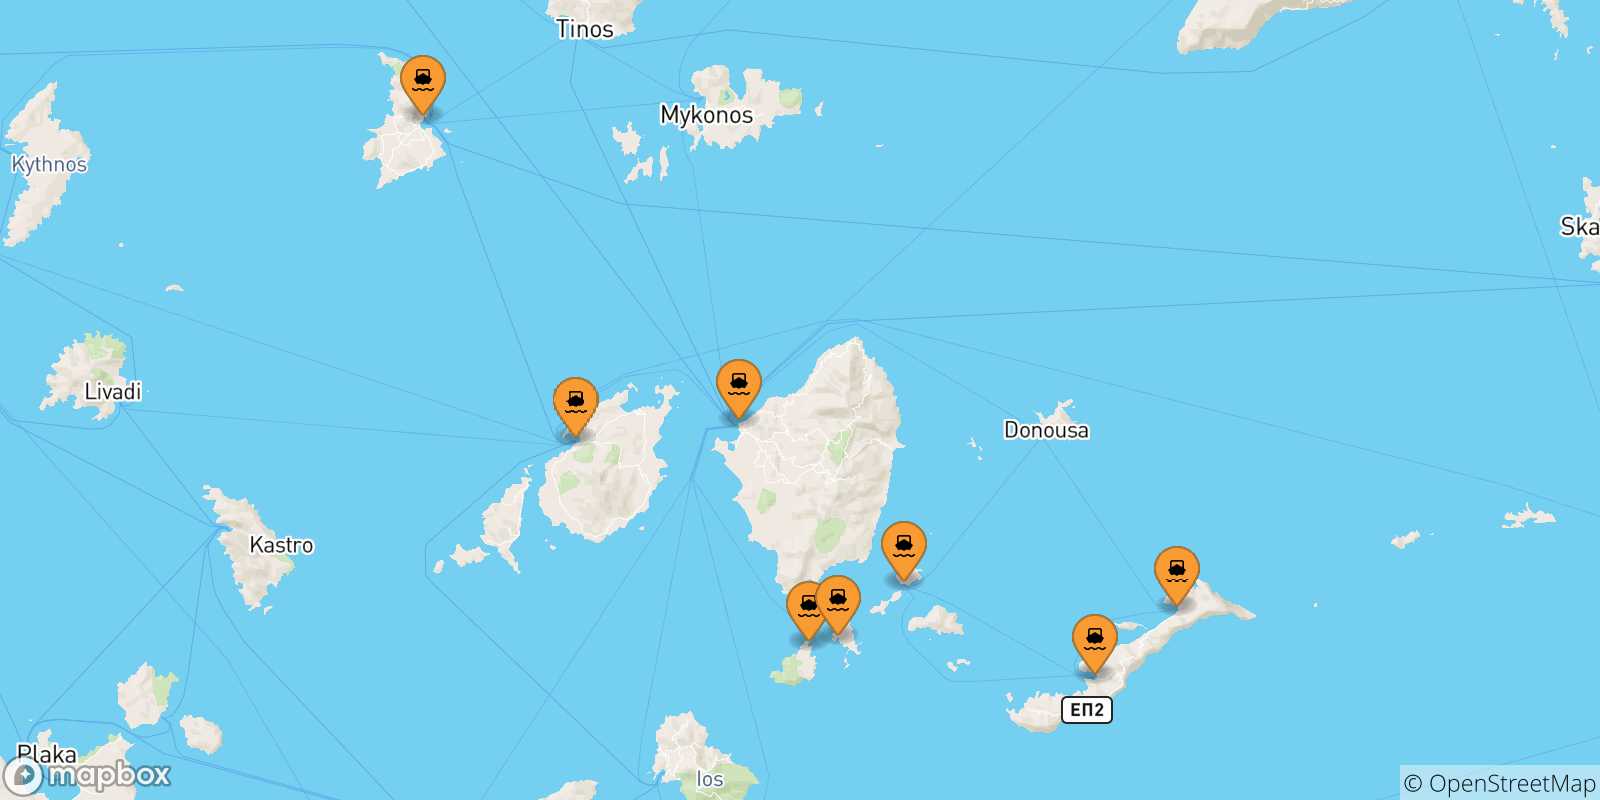 Mappa delle possibili rotte tra le Isole Cicladi e Donoussa